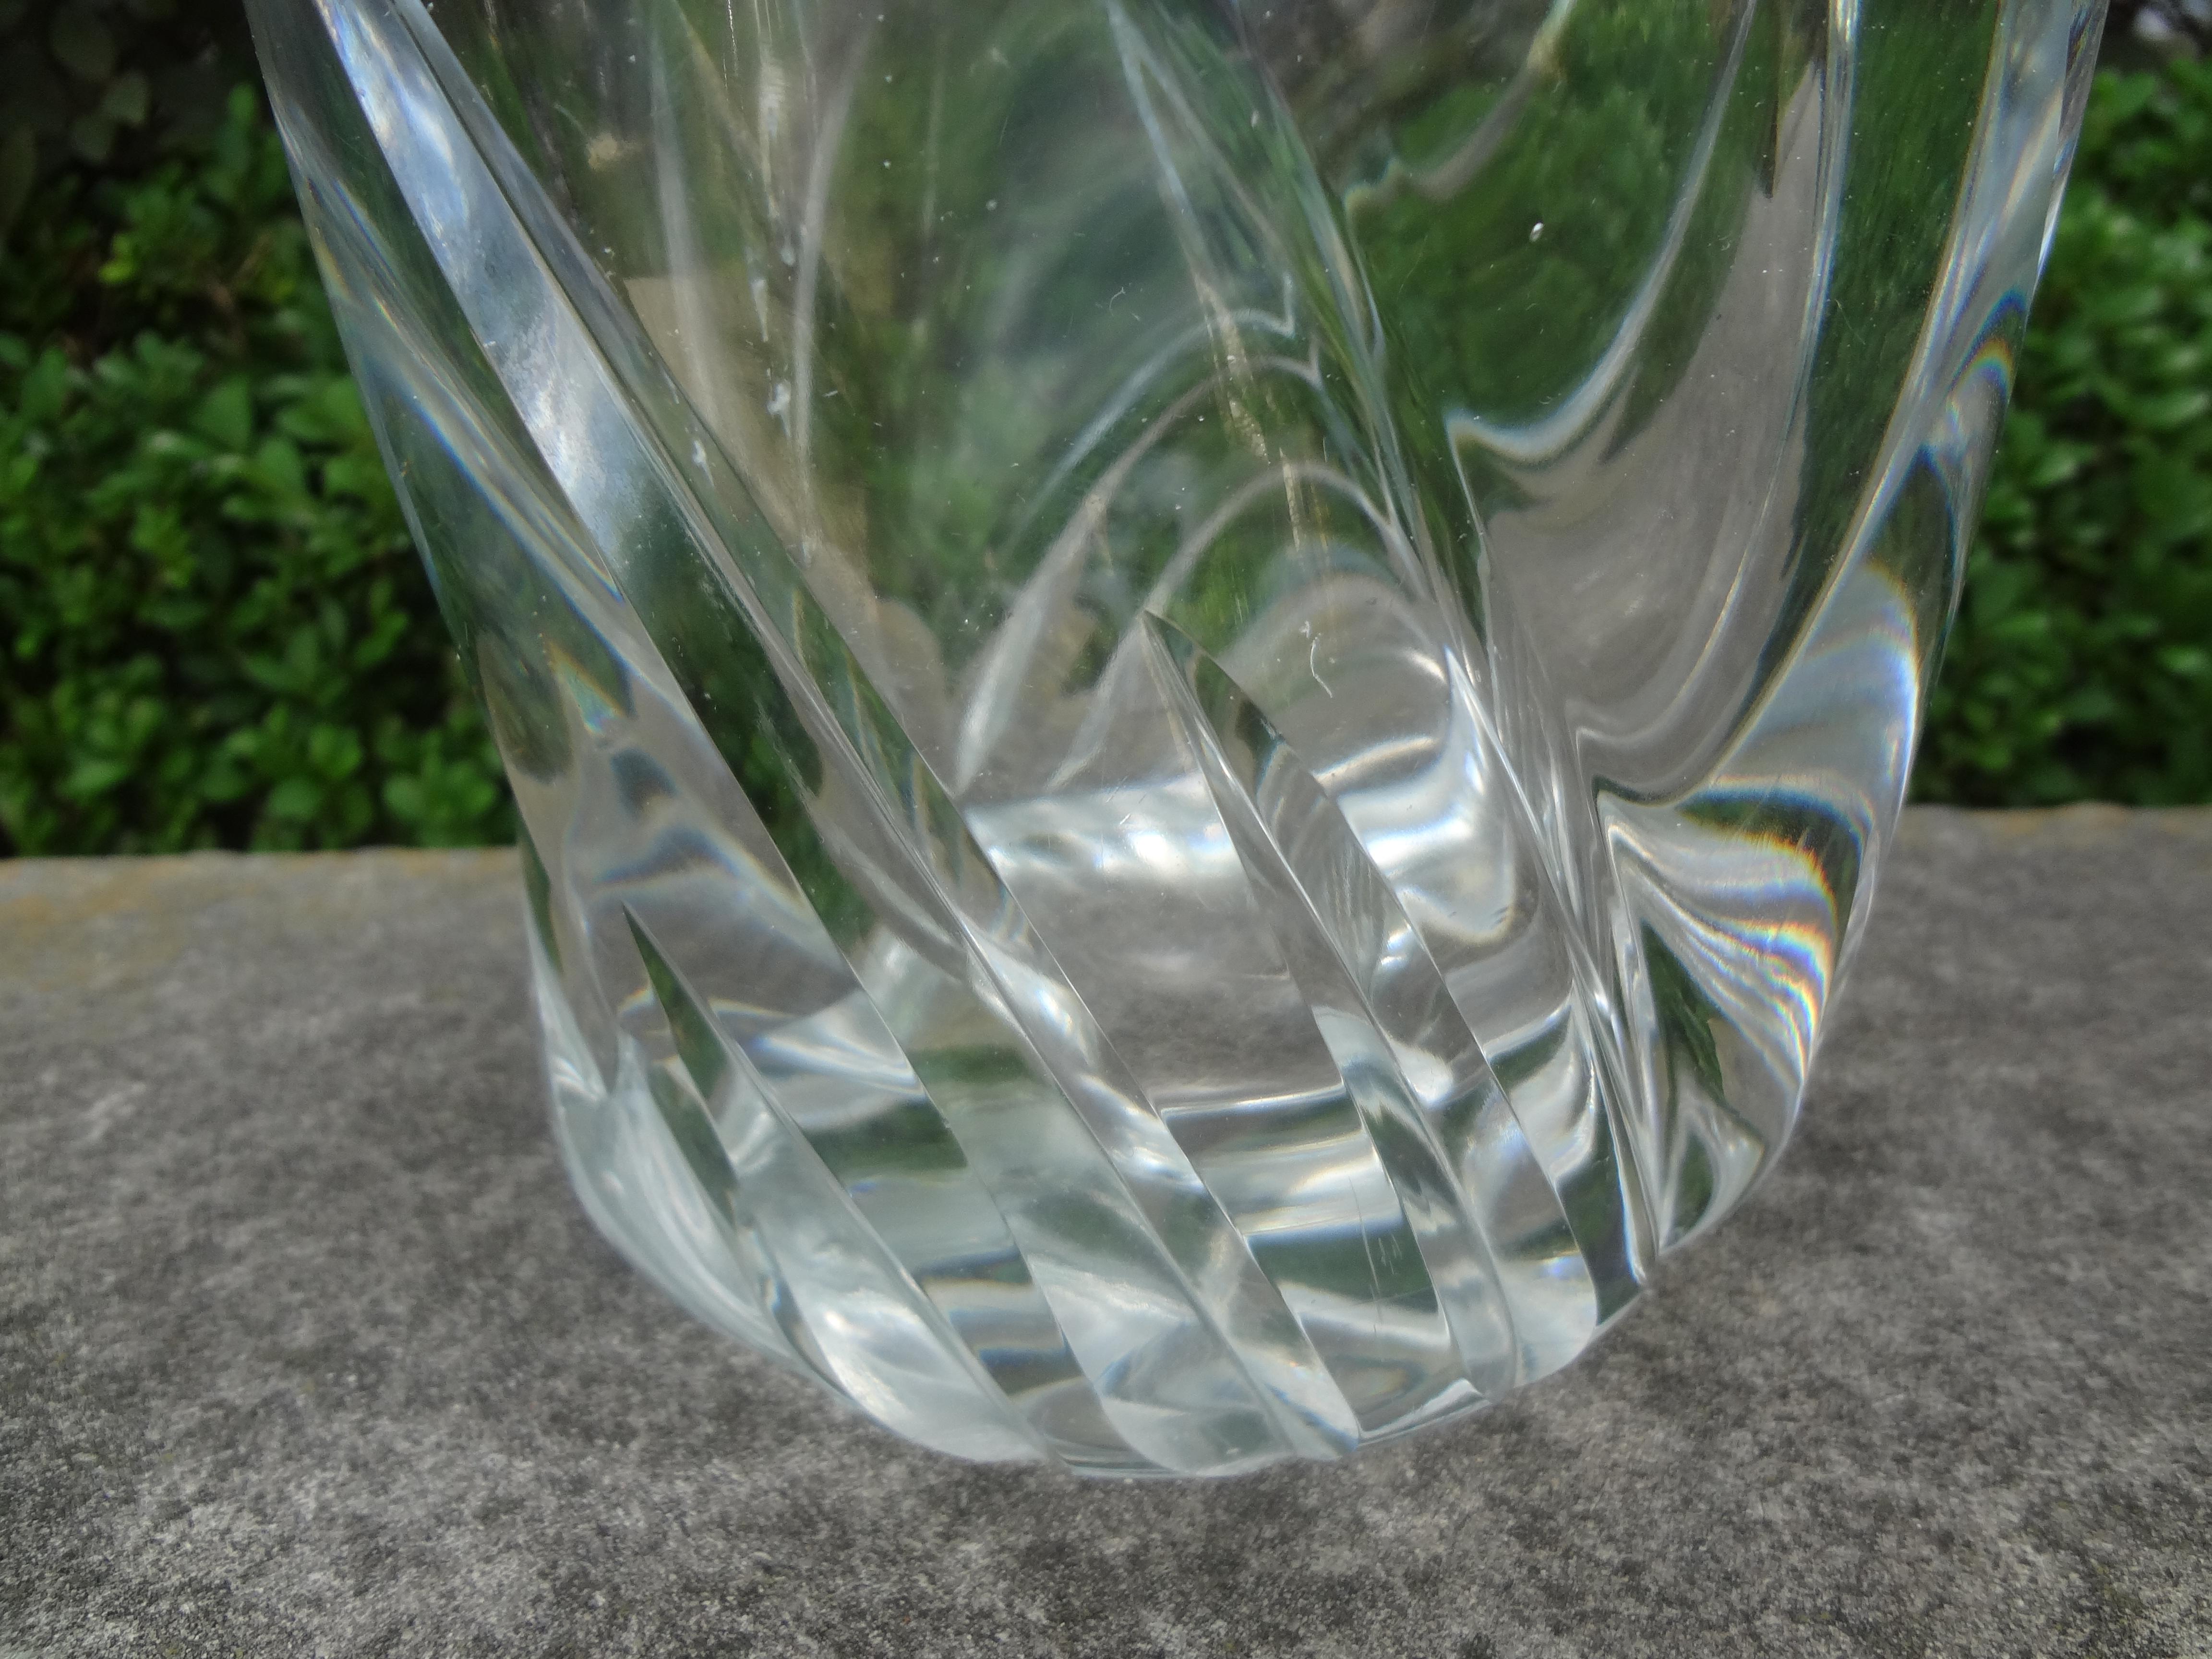 Wunderschöne große Vase aus klarem französischen Kristall von Daum, ca. 1945-1950.
Unsere großformatige schimmernde Kristallvase mit breiter Öffnung verjüngt sich zum Boden hin und trägt die geätzte Signatur 